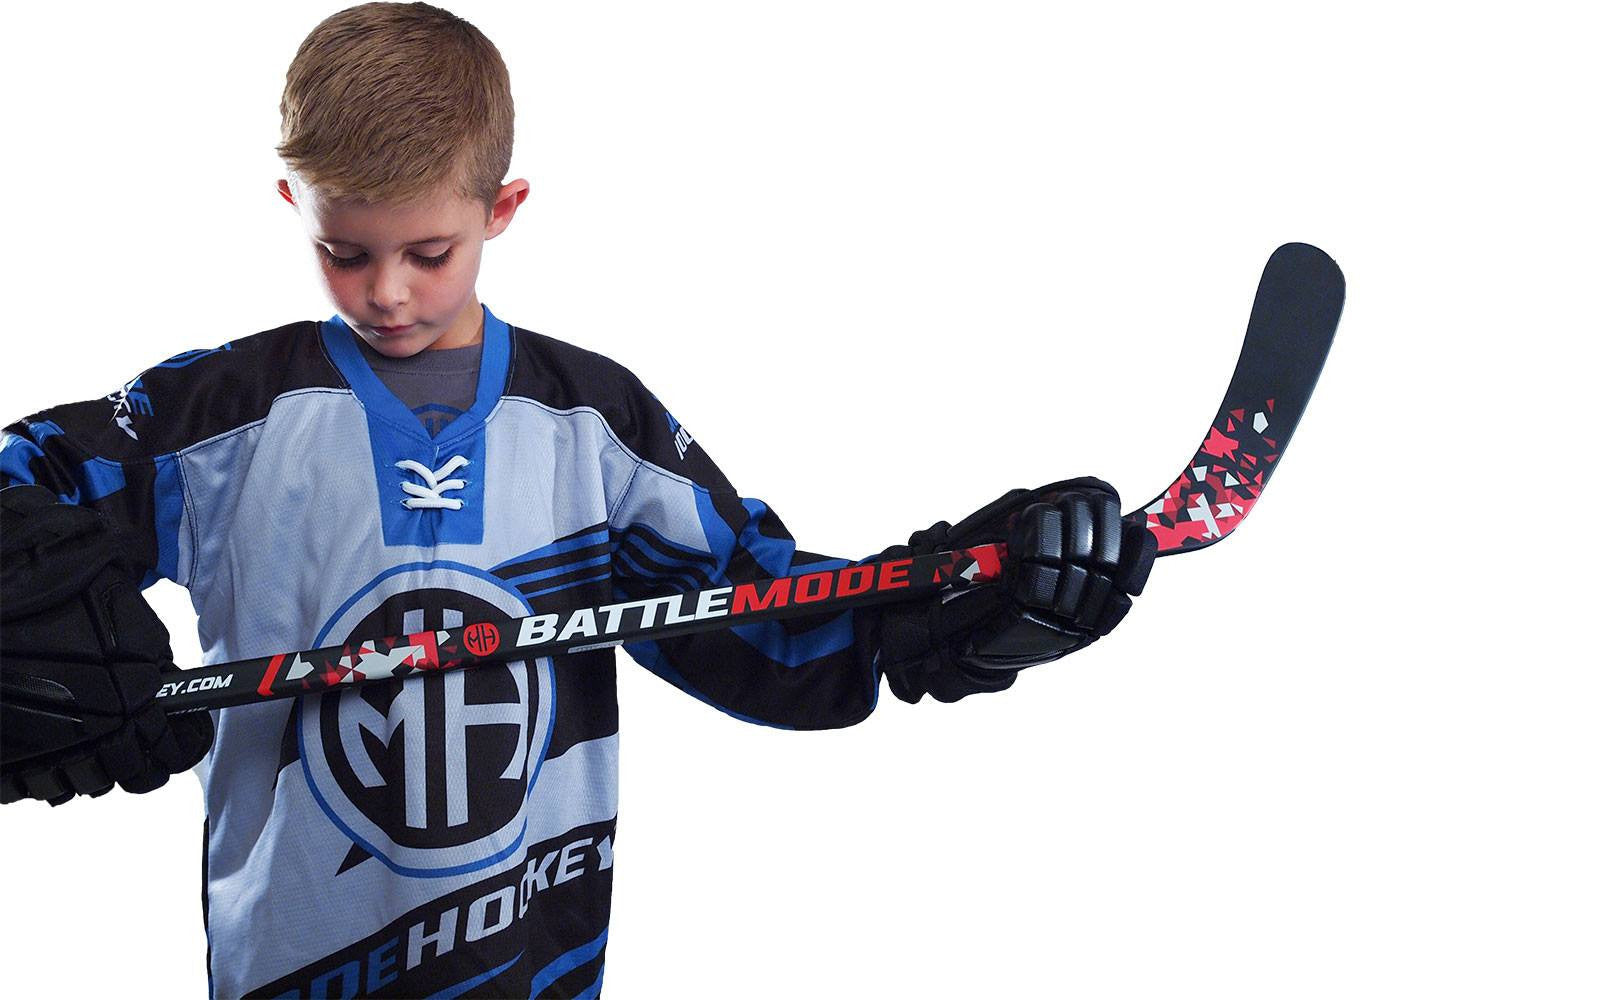 BattleMode 30 Flex Junior Hockey Sticks from